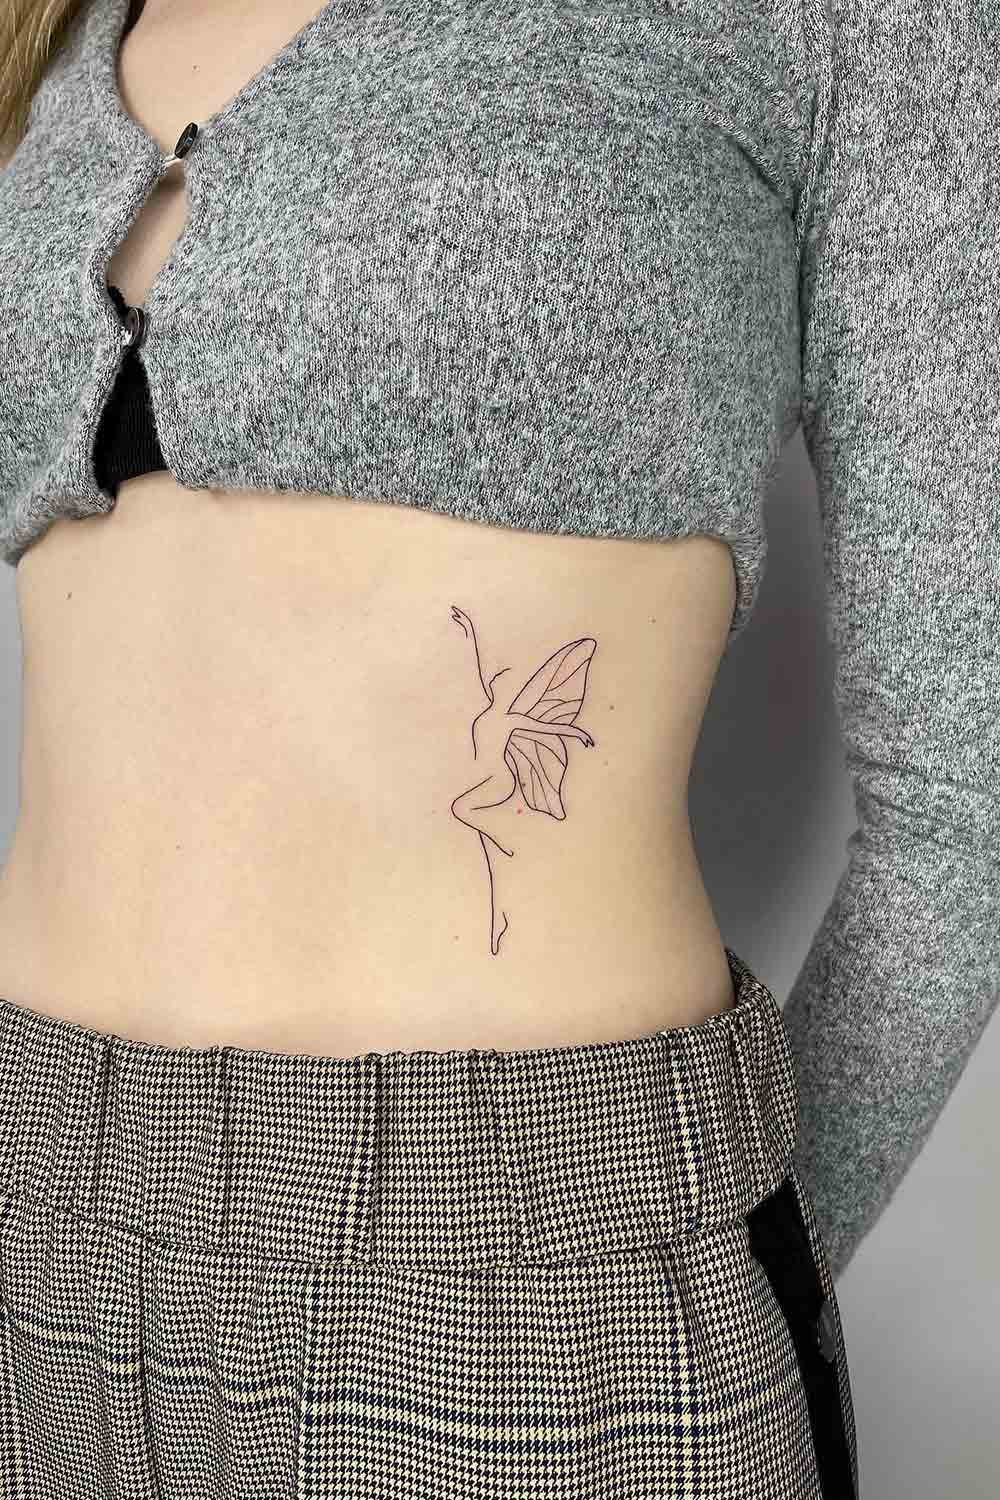 tatuagem-de-mulher-com-asas-de-borboleta-na-barriga 